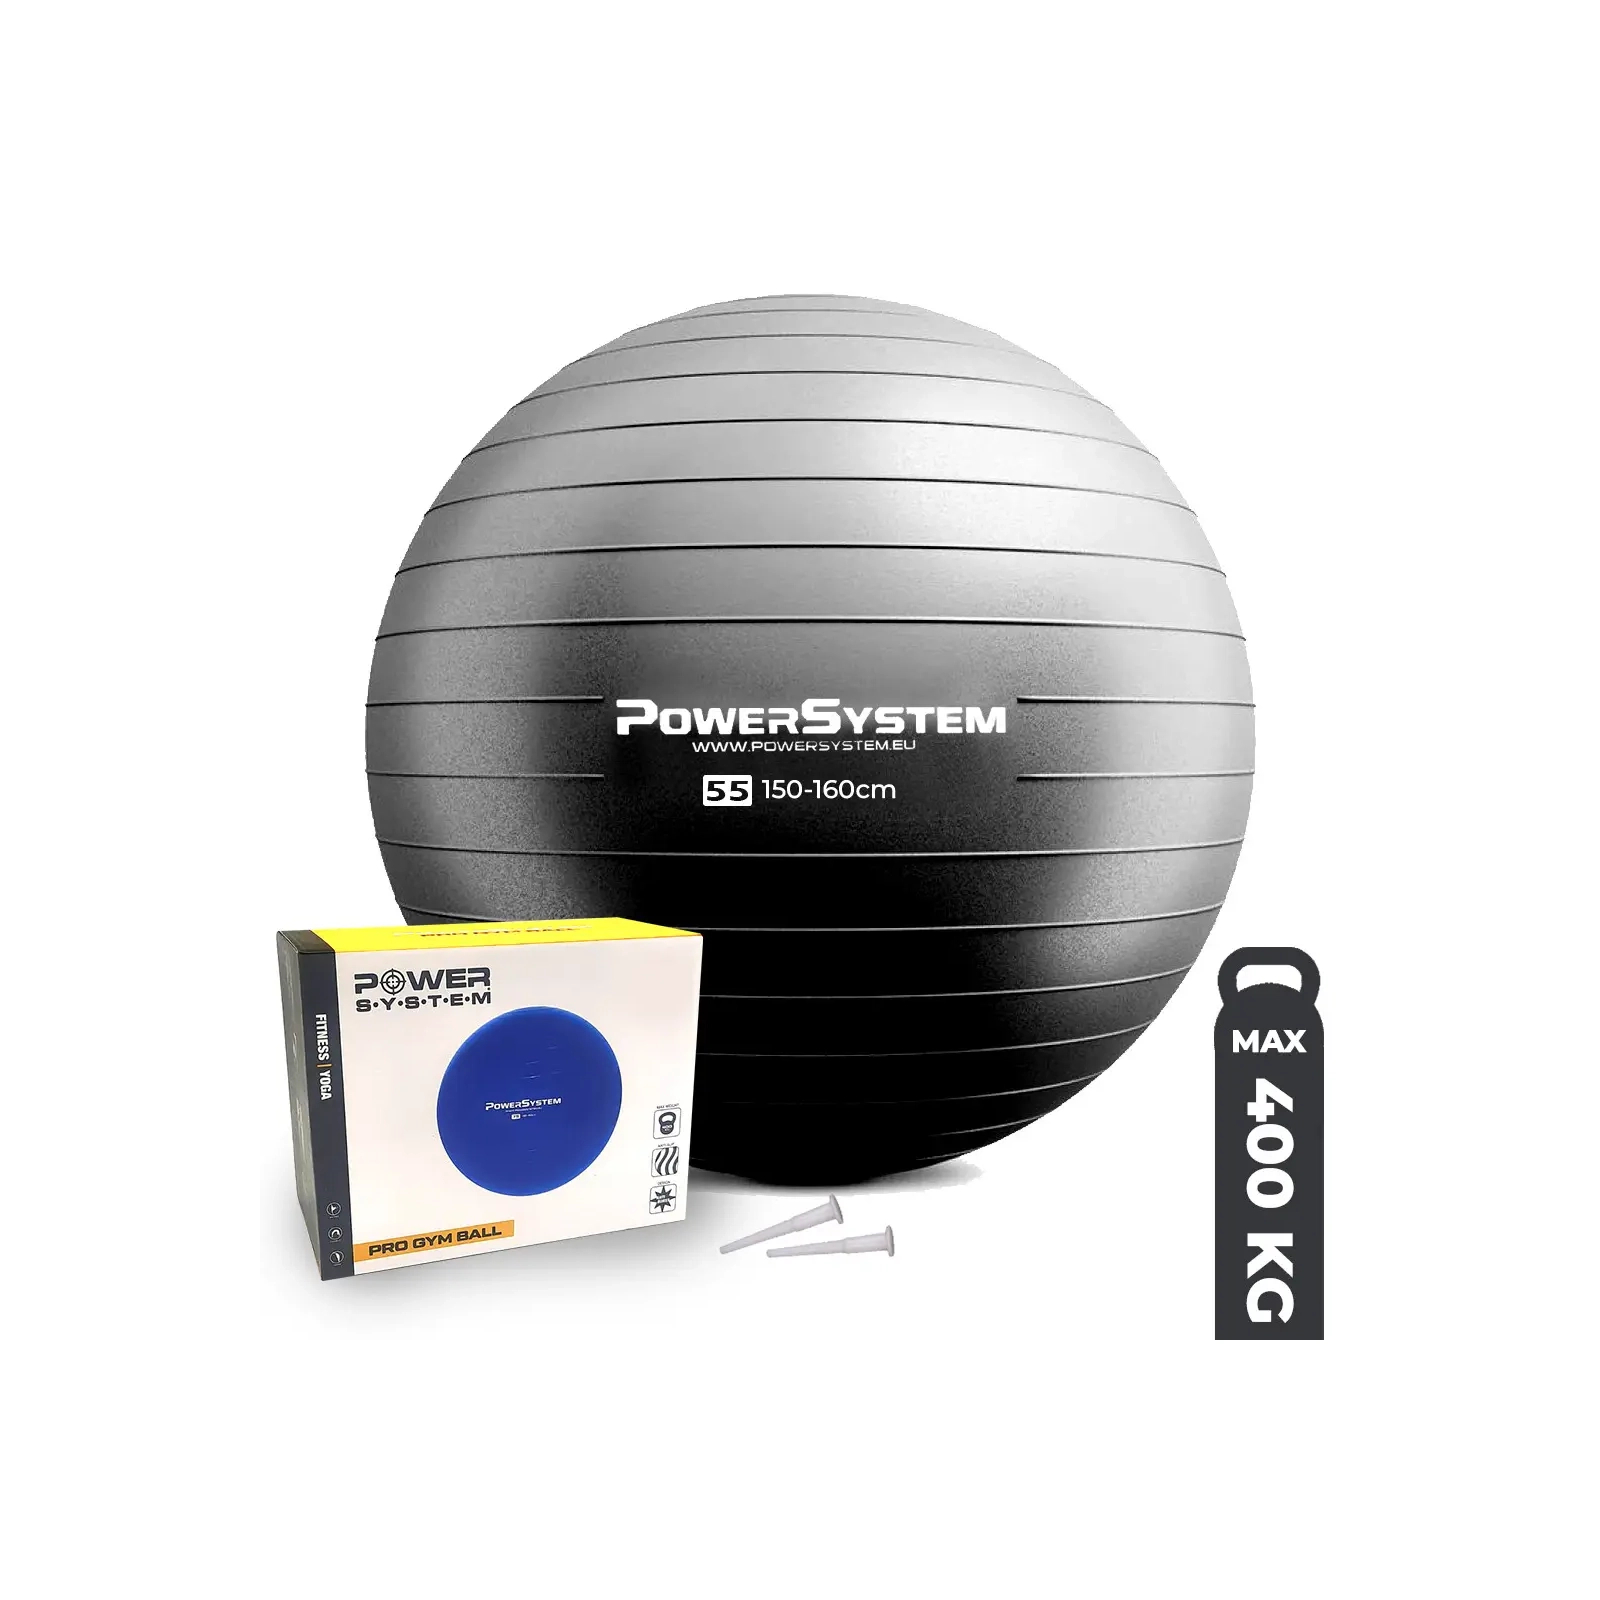 М'яч для фітнесу Power System PS-4011 Pro Gymball 55 см Black (4011BK-0)